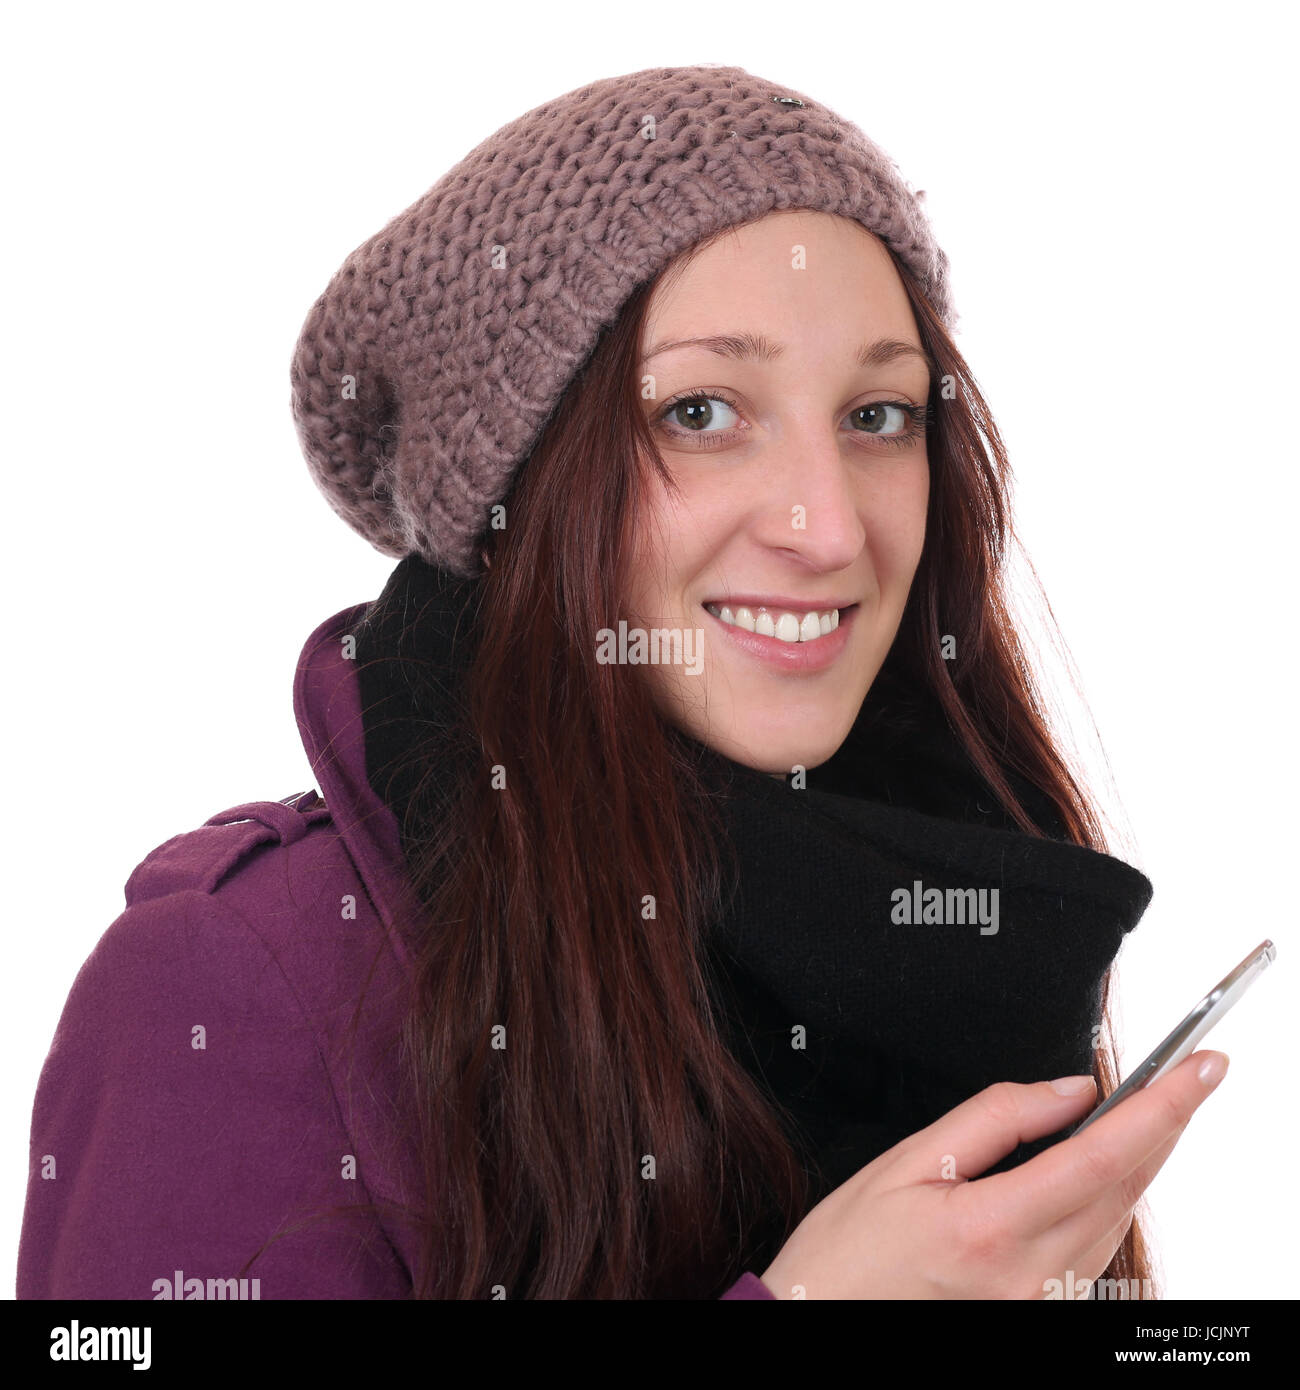 Junge Frau im Winter beim Telefonieren mit Smartphone oder Handy, isoliert vor einem weissen Hintergrund Stock Photo